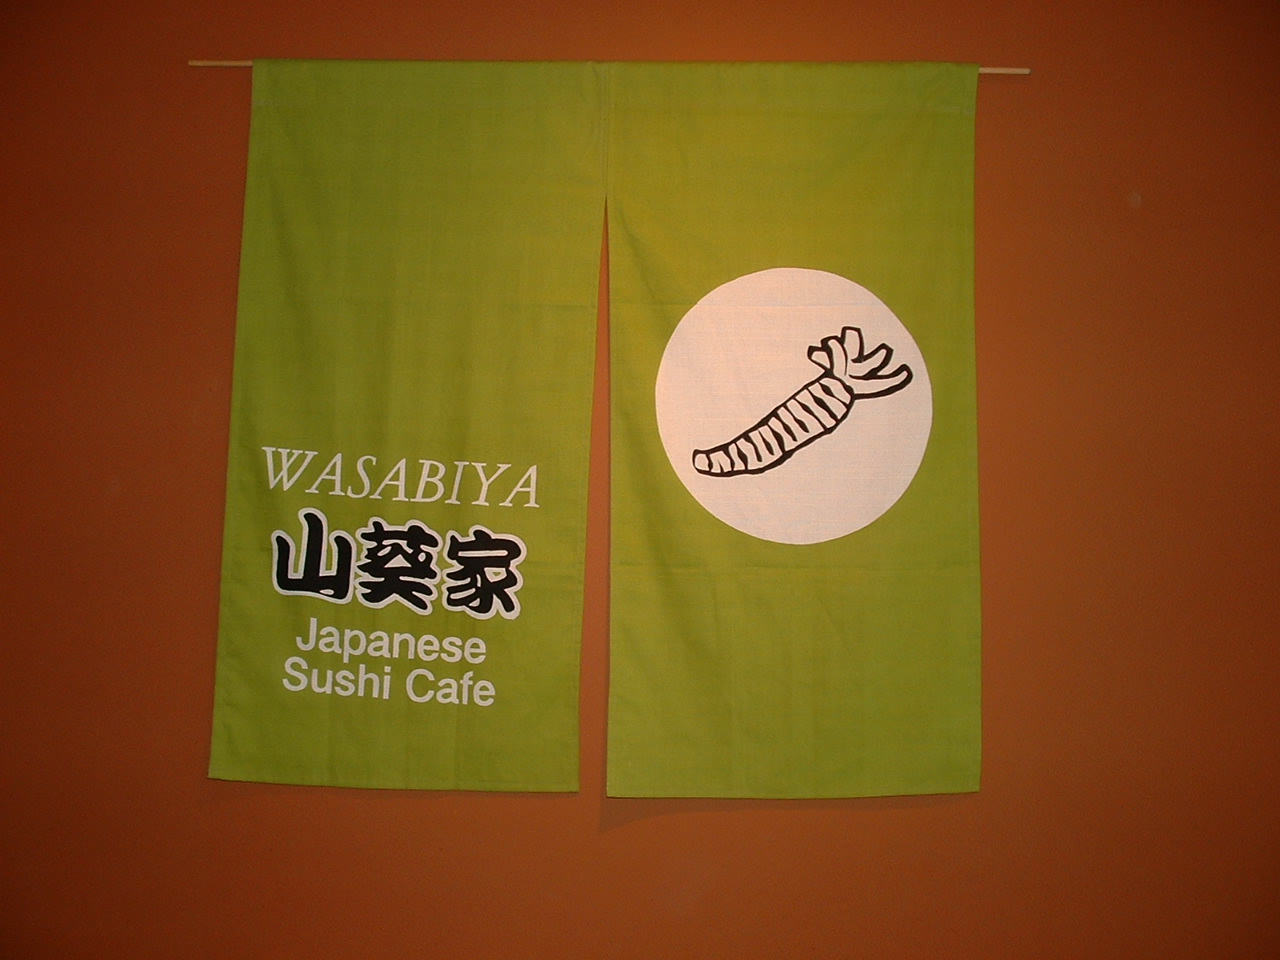 キャンベルリバーのレストランで寿司シェフ・クック・ディッシュウォッシャー大募集 - WASABIYA Japanese Sushi Cafe イメージ画像